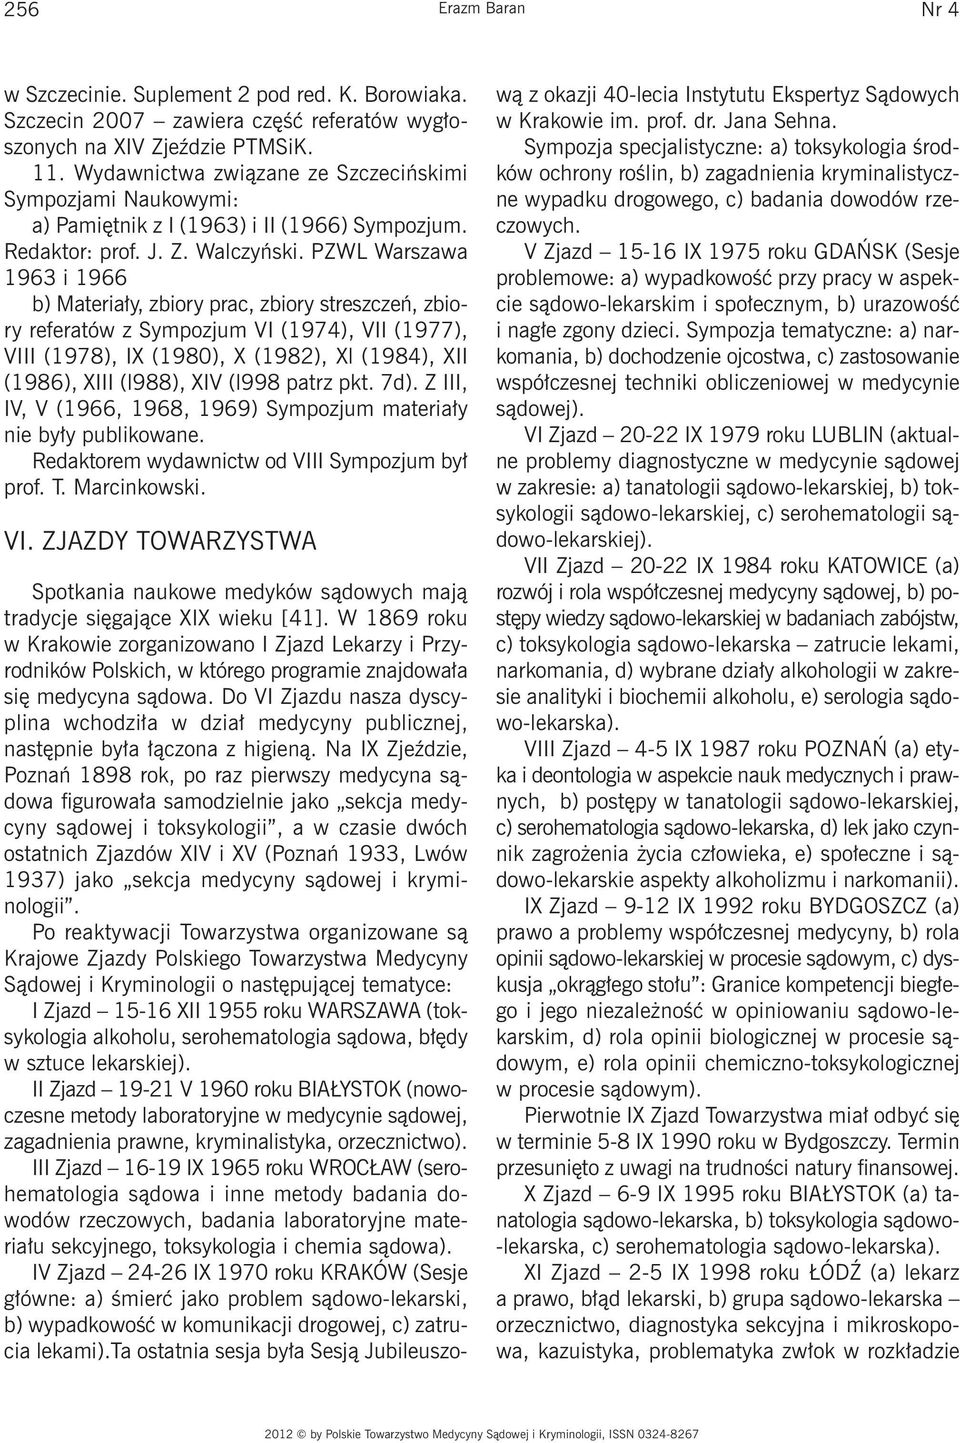 PZWL Warszawa 1963 i 1966 b) Materiały, zbiory prac, zbiory streszczeń, zbiory referatów z Sympozjum VI (1974), VII (1977), VIII (1978), IX (1980), X (1982), Xl (1984), XII (1986), XIII (l988), XIV